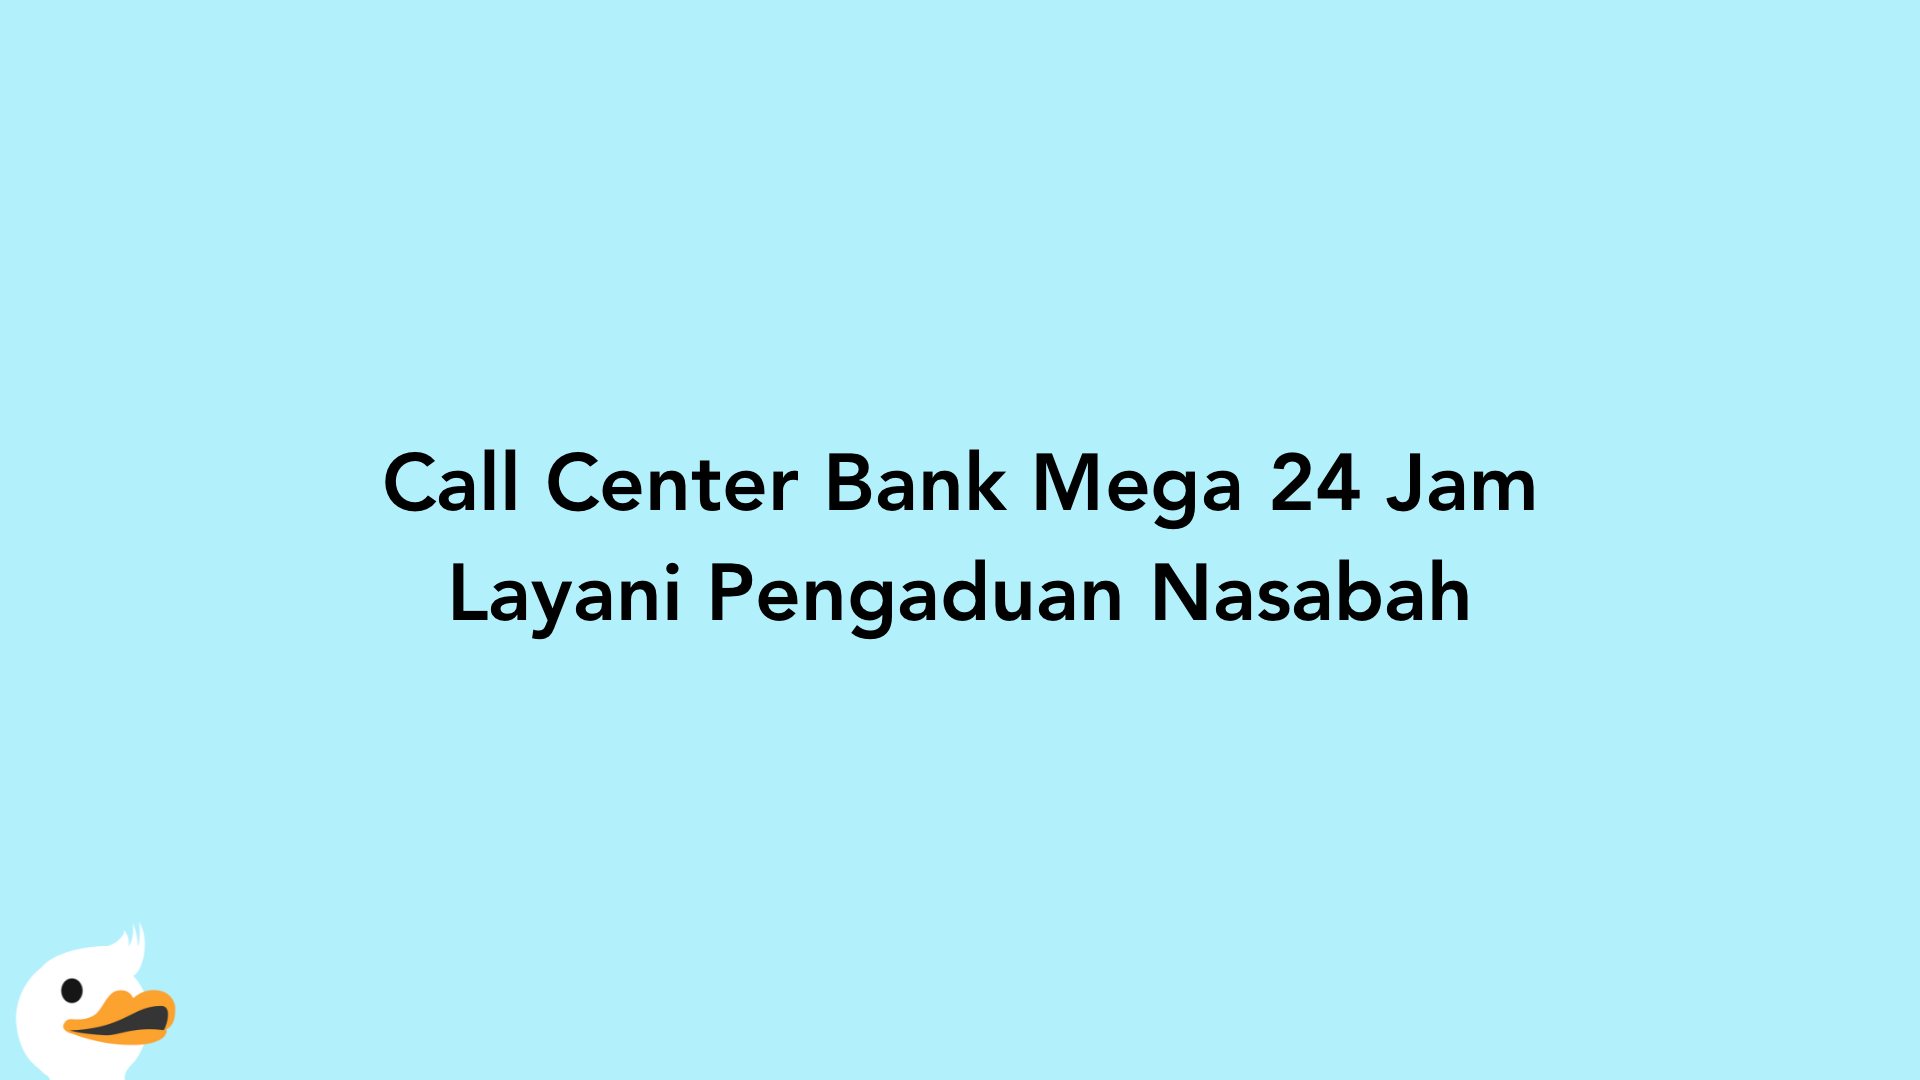 Call Center Bank Mega 24 Jam Layani Pengaduan Nasabah